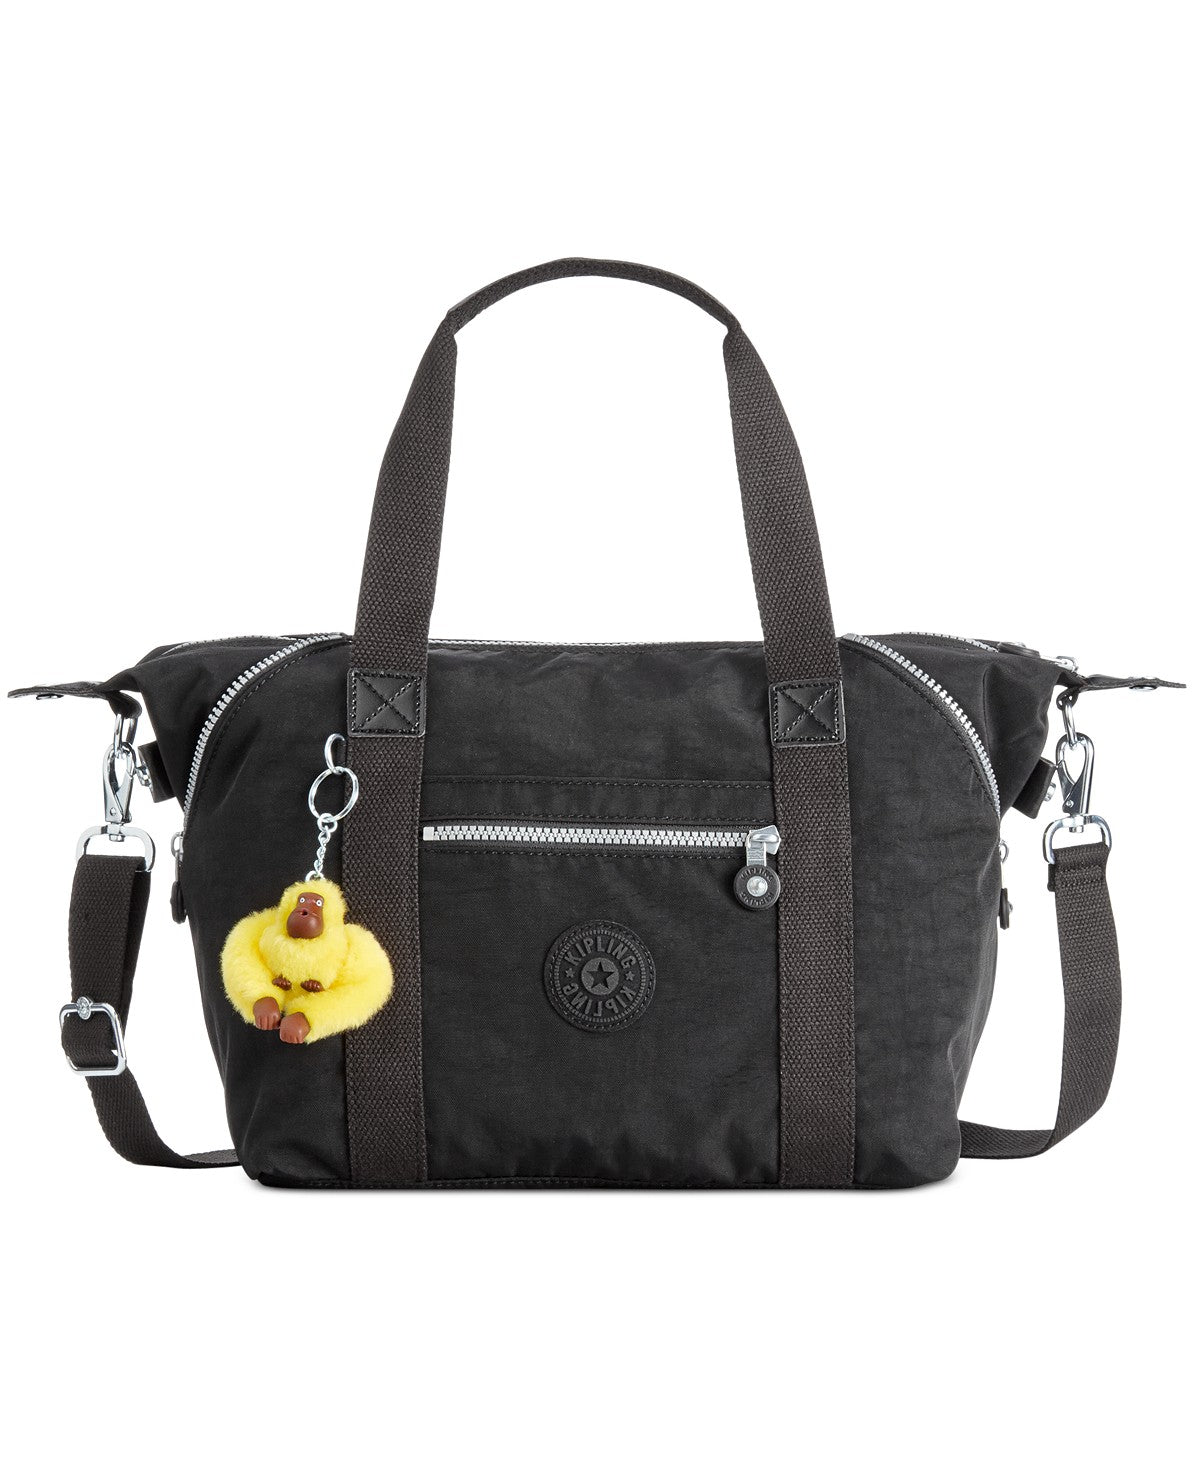 Kipling Top Zip Handbags | Mercari